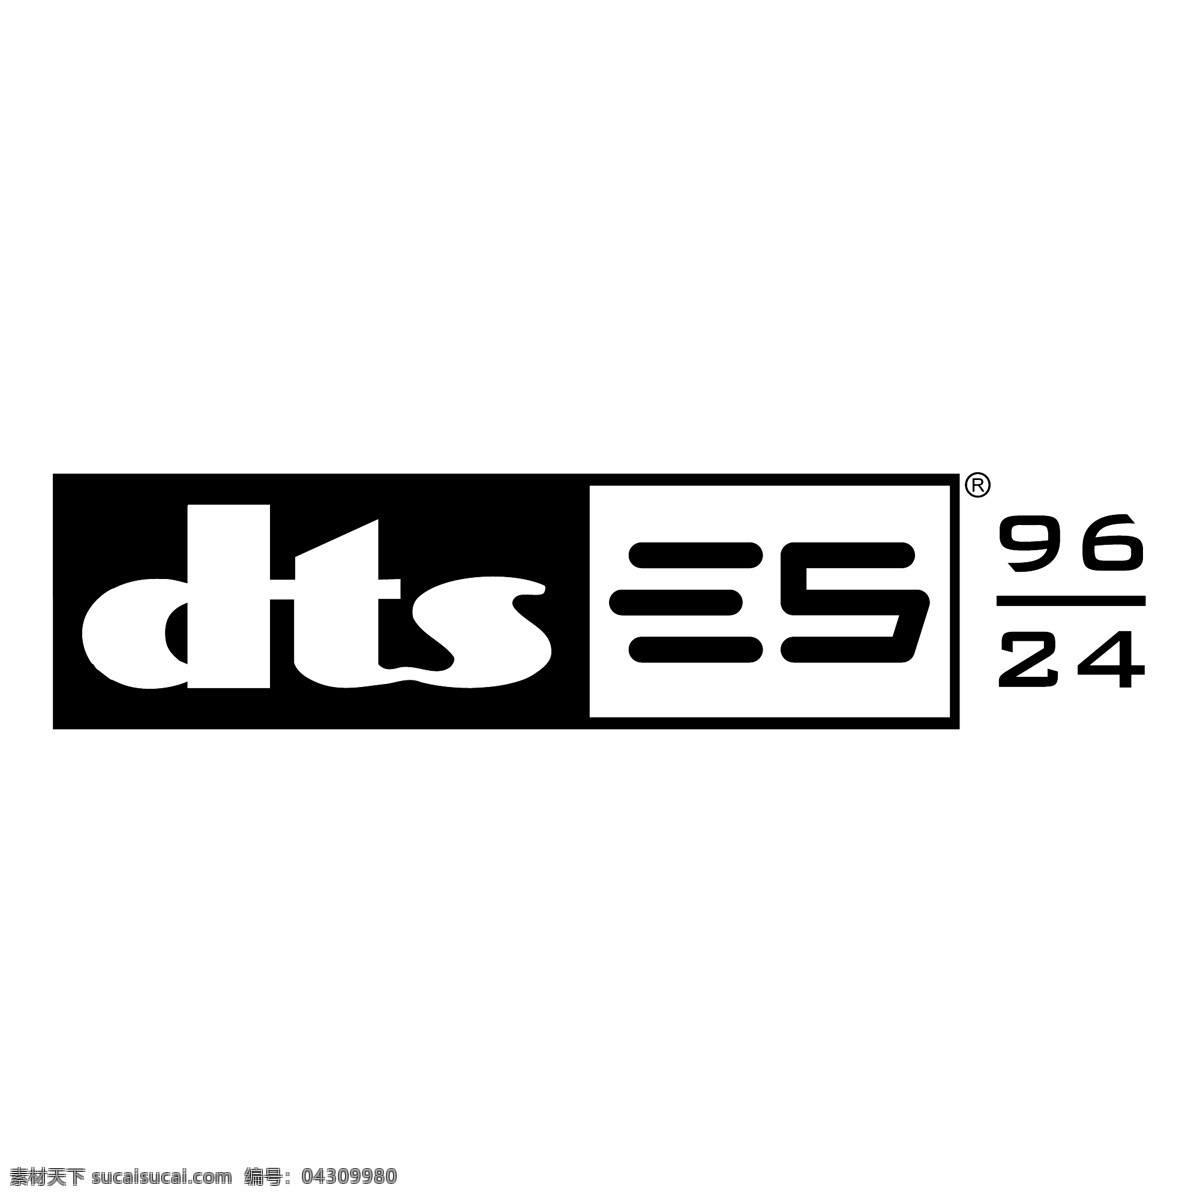 dts es 向量 向量的es 矢量es 矢量 es标志矢量 矢量标志es es标志 标志 标志es eps向量 向量es eps标志 标志设计 蓝色